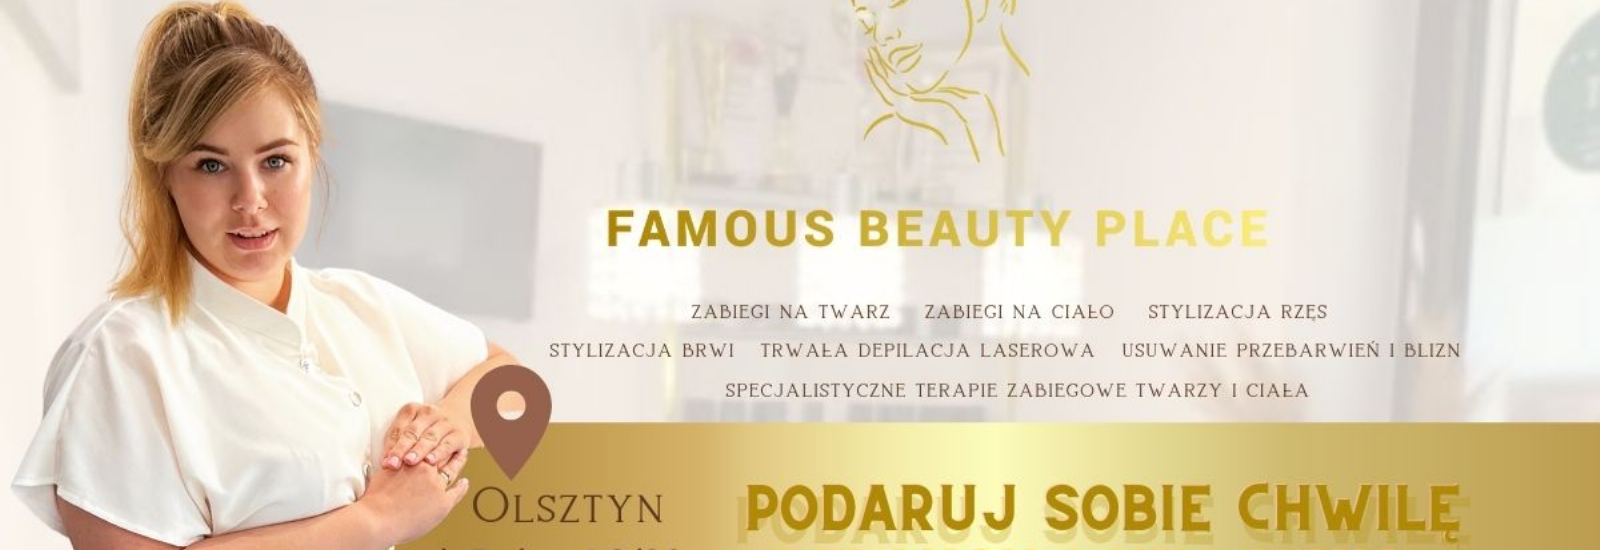 Famous Beauty Place, Olsztyn, mniejszy-rozmiar